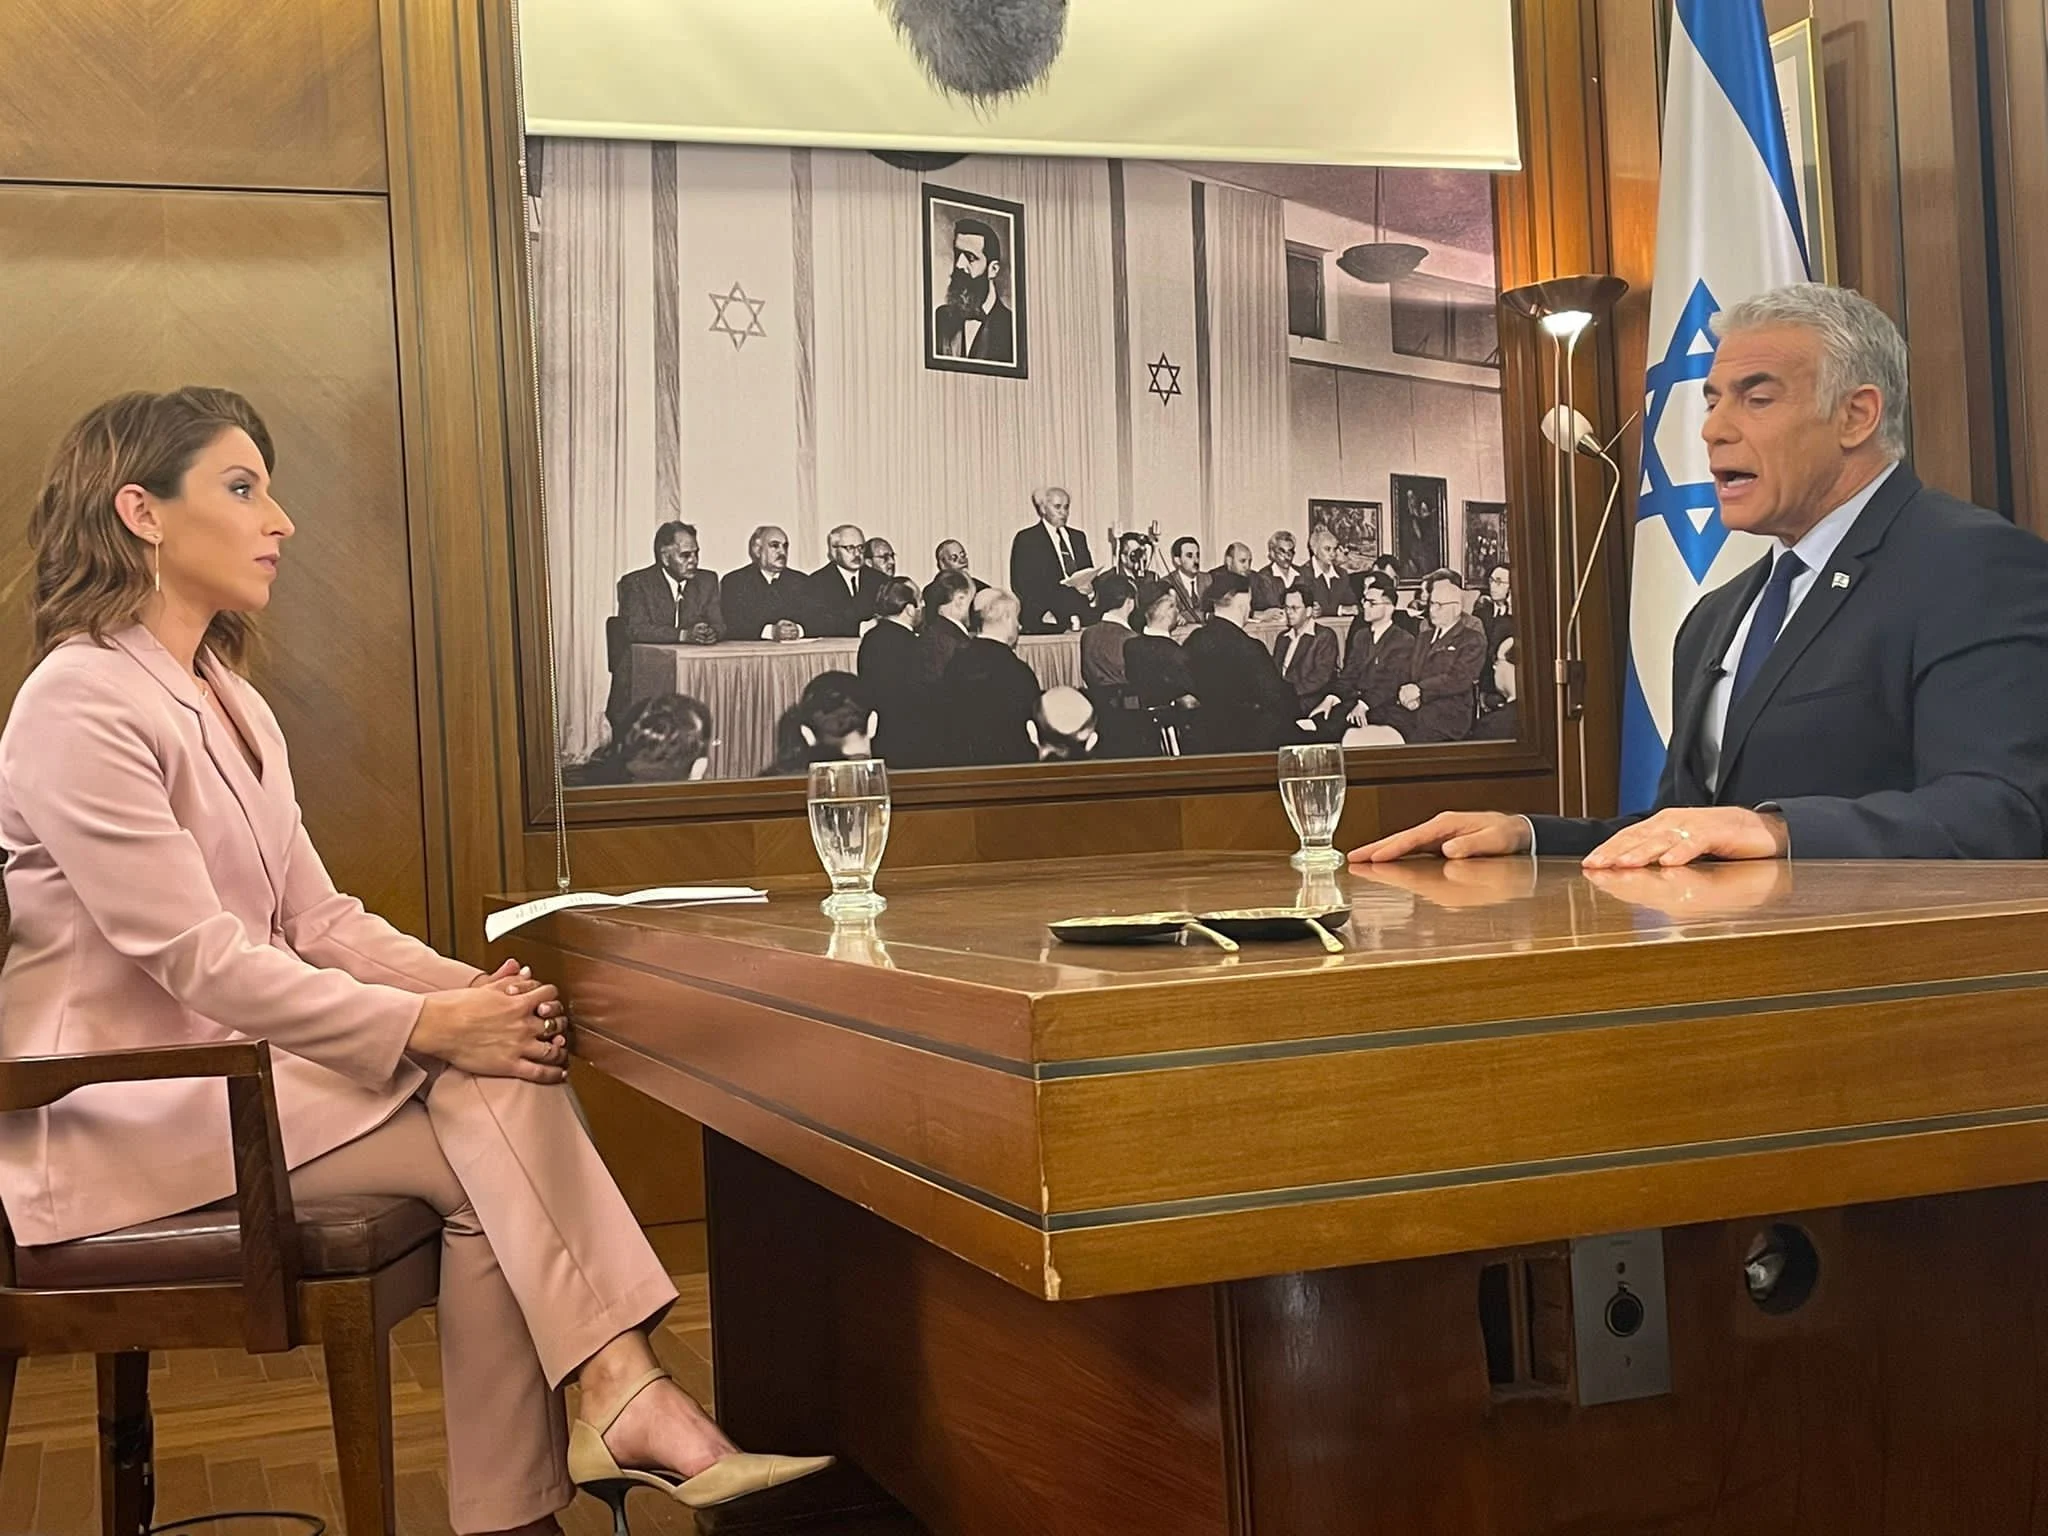 ראש הממשלה לפיד בריאיון עם הילה קורח